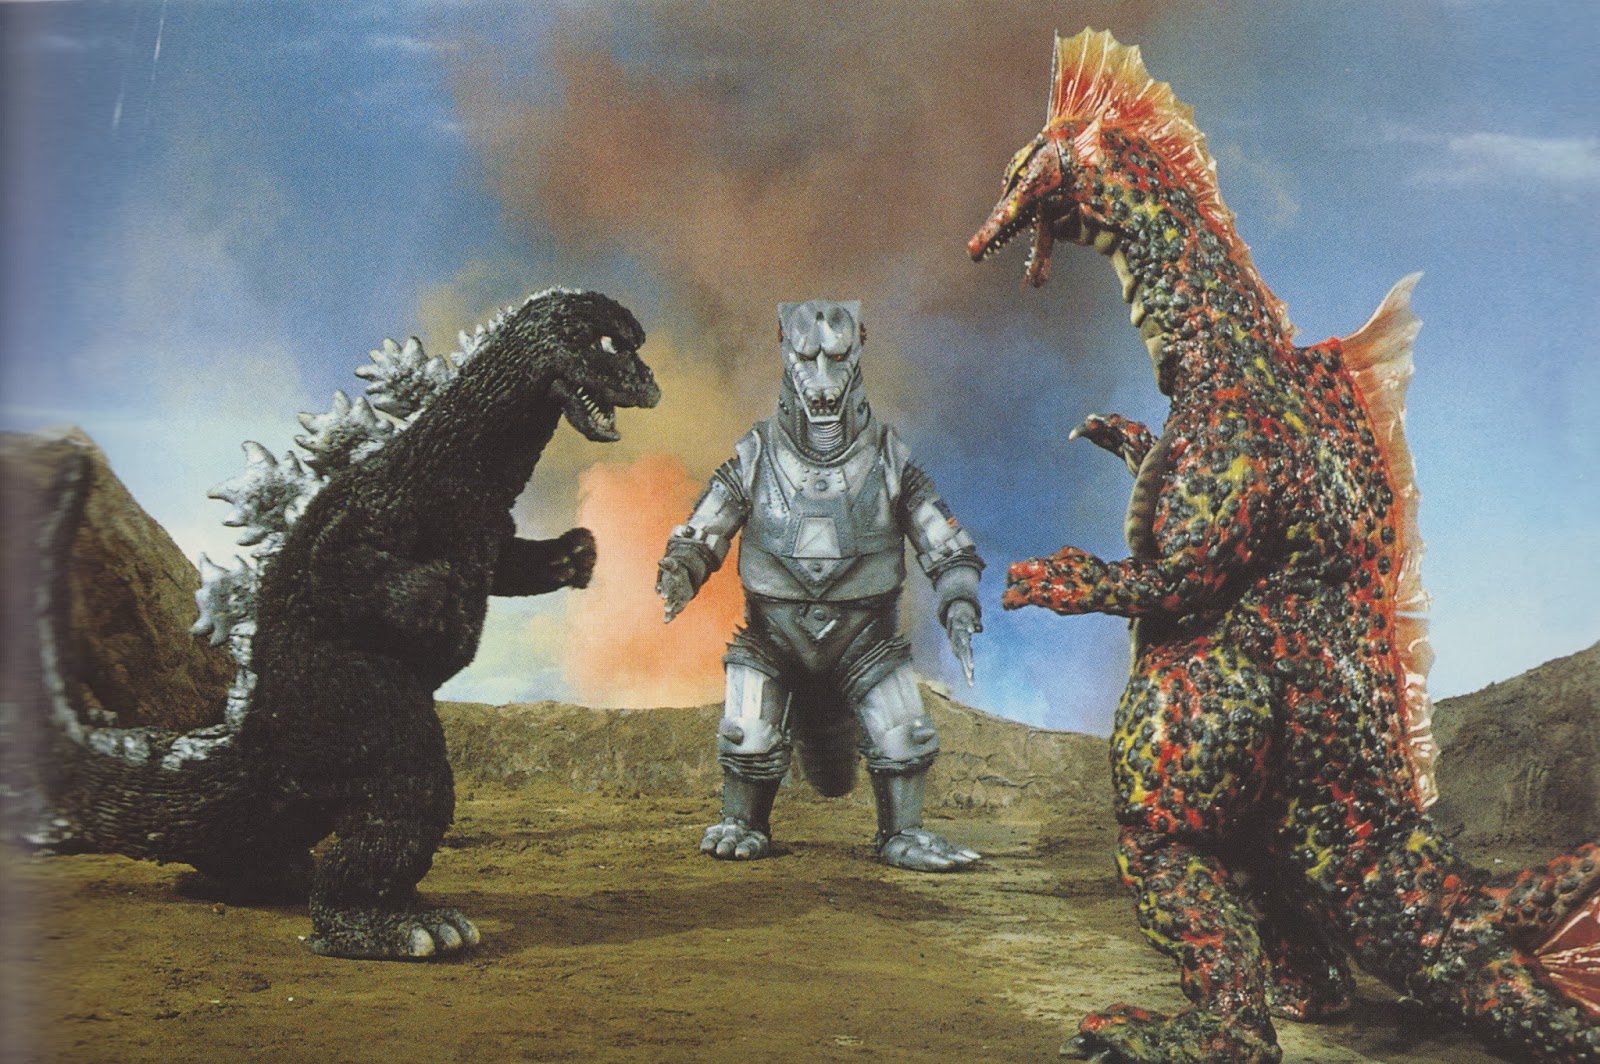 Godzilla Vs. Mechagodzilla wallpaper, Movie, HQ Godzilla Vs. Mechagodzilla pictureK Wallpaper 2019